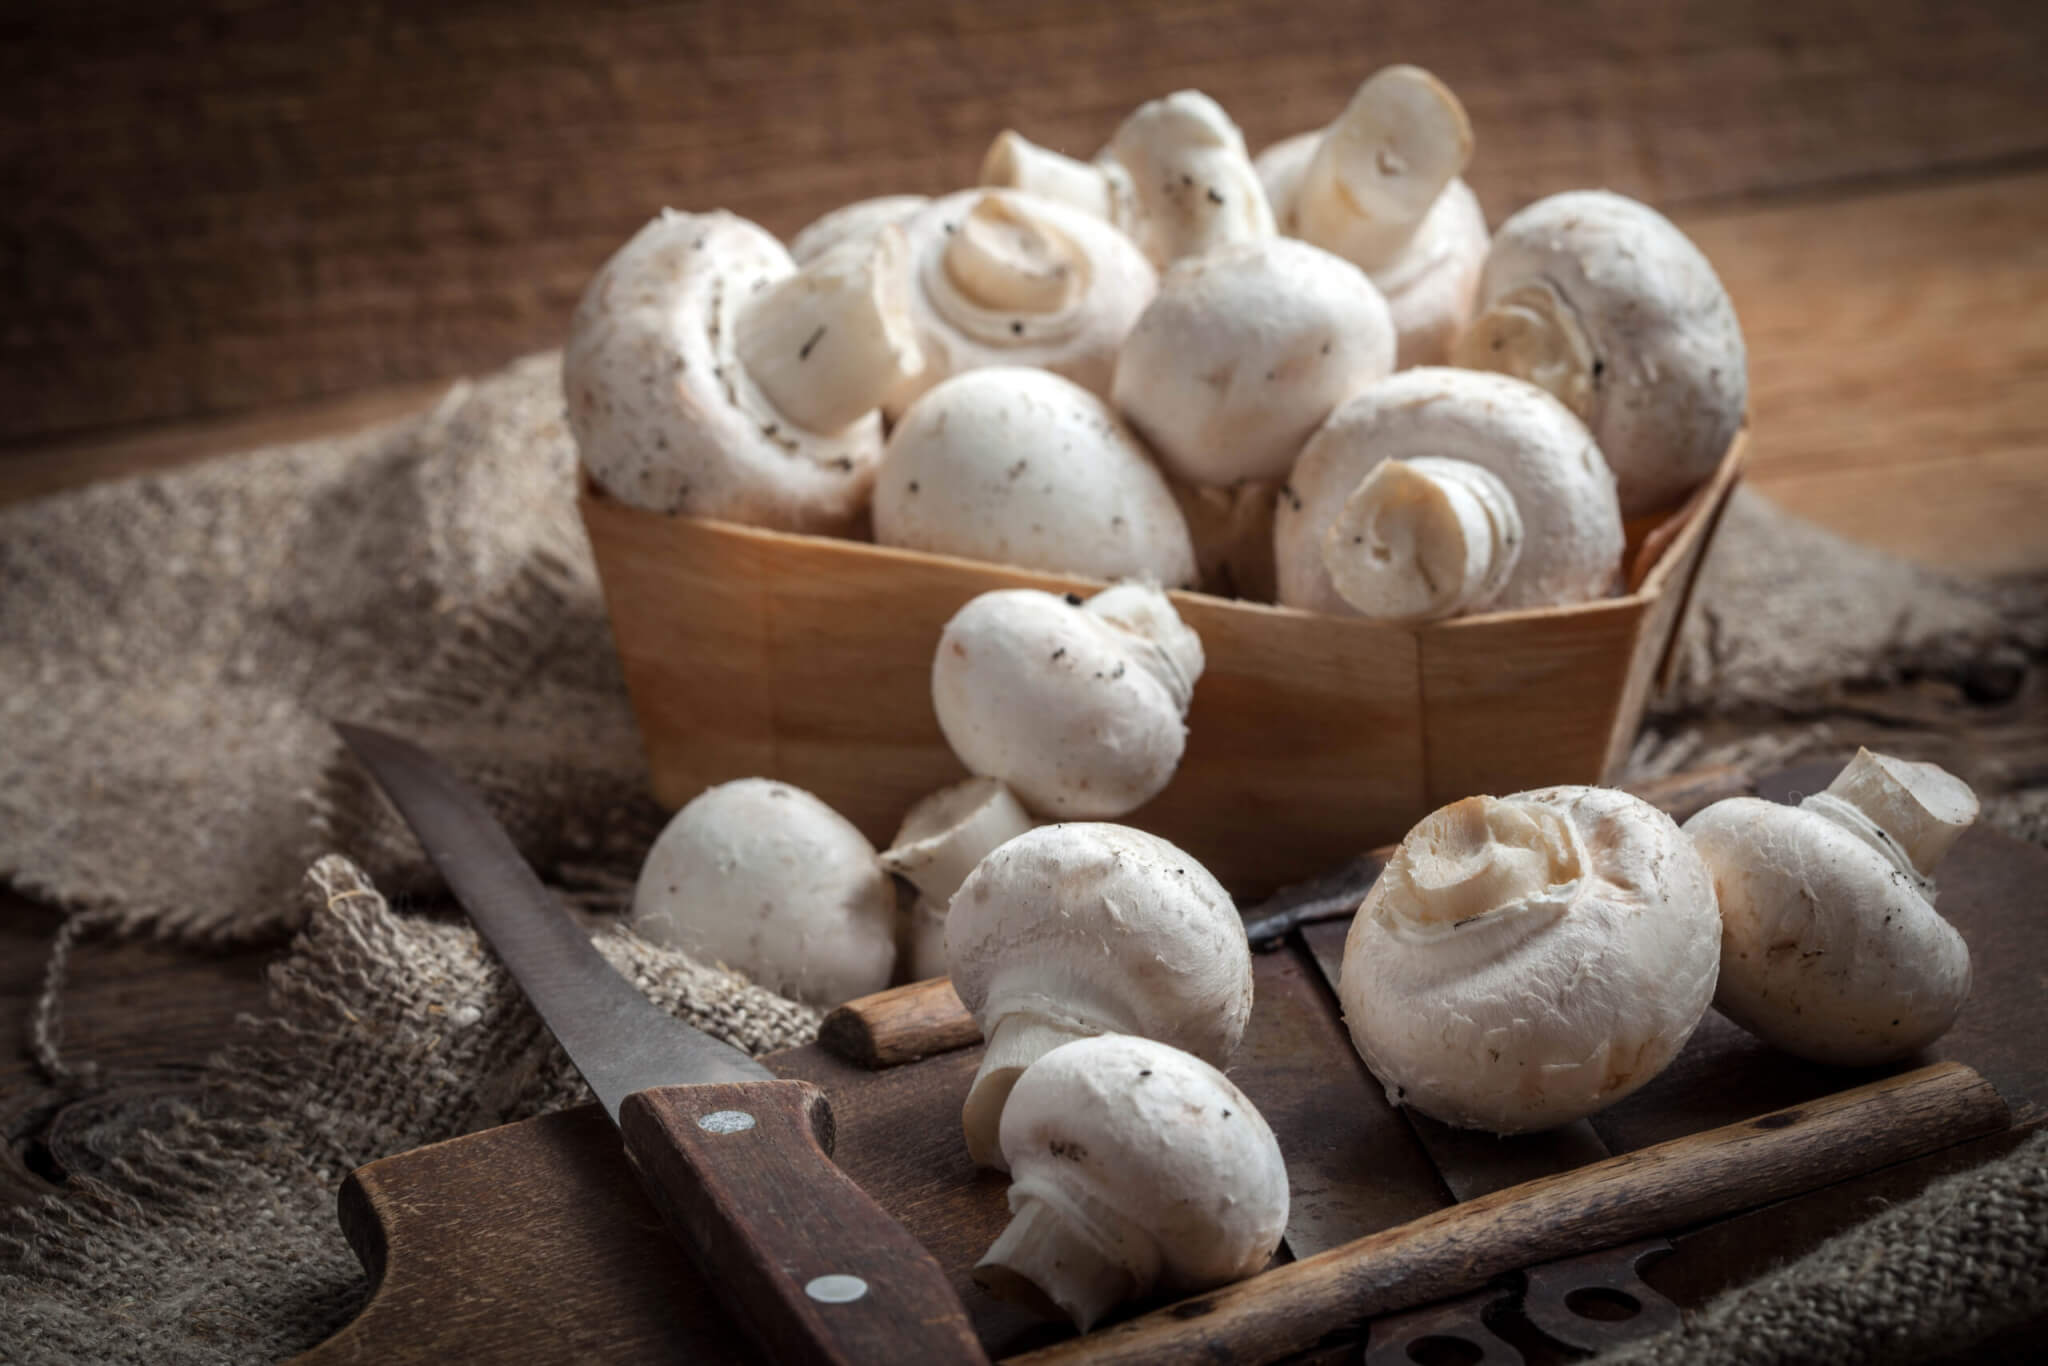 National Mushroom Day (October 15th)